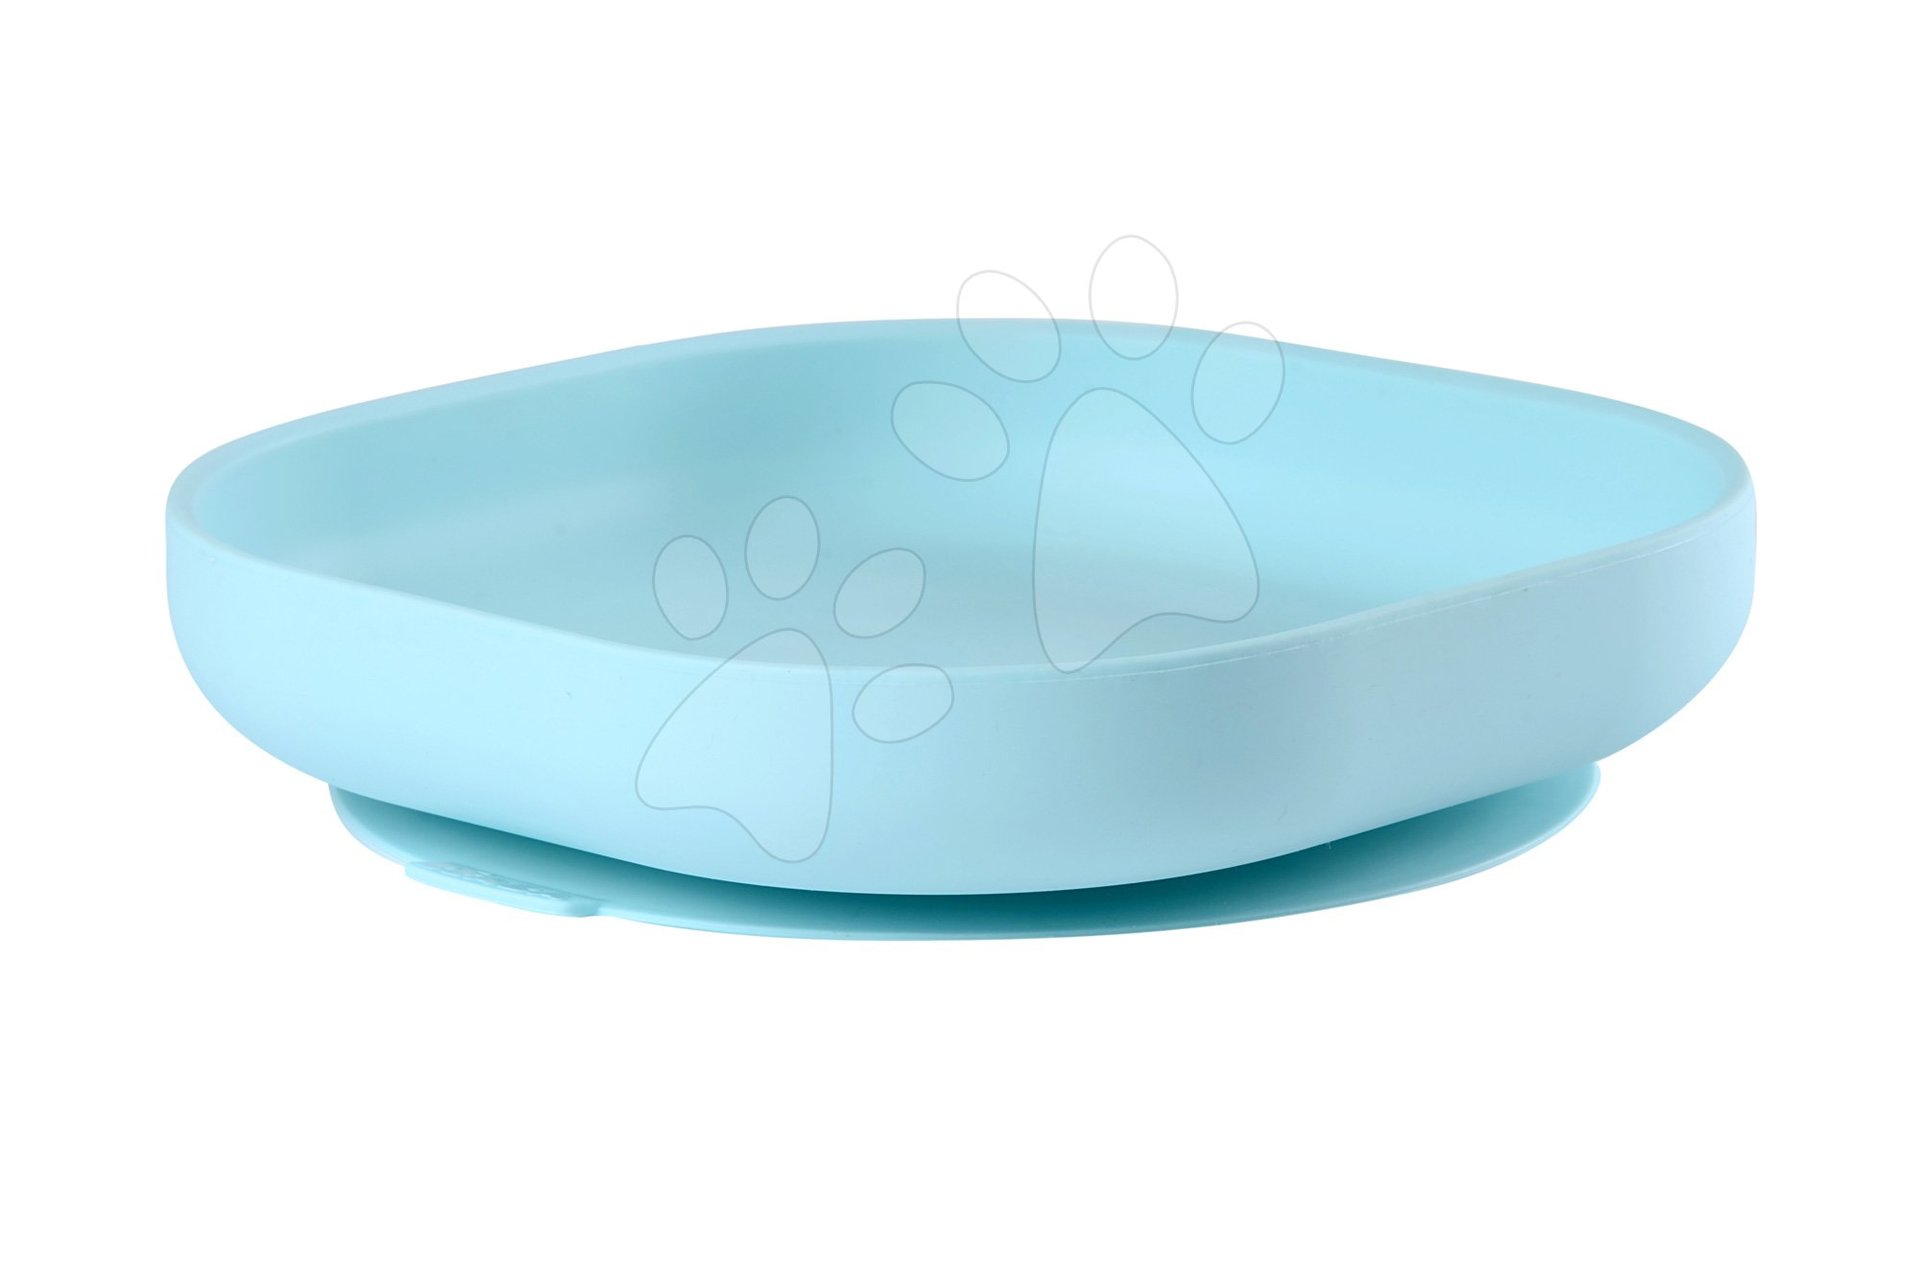 Beaba tanier pre bábätká zo silikónu 913430 modrý